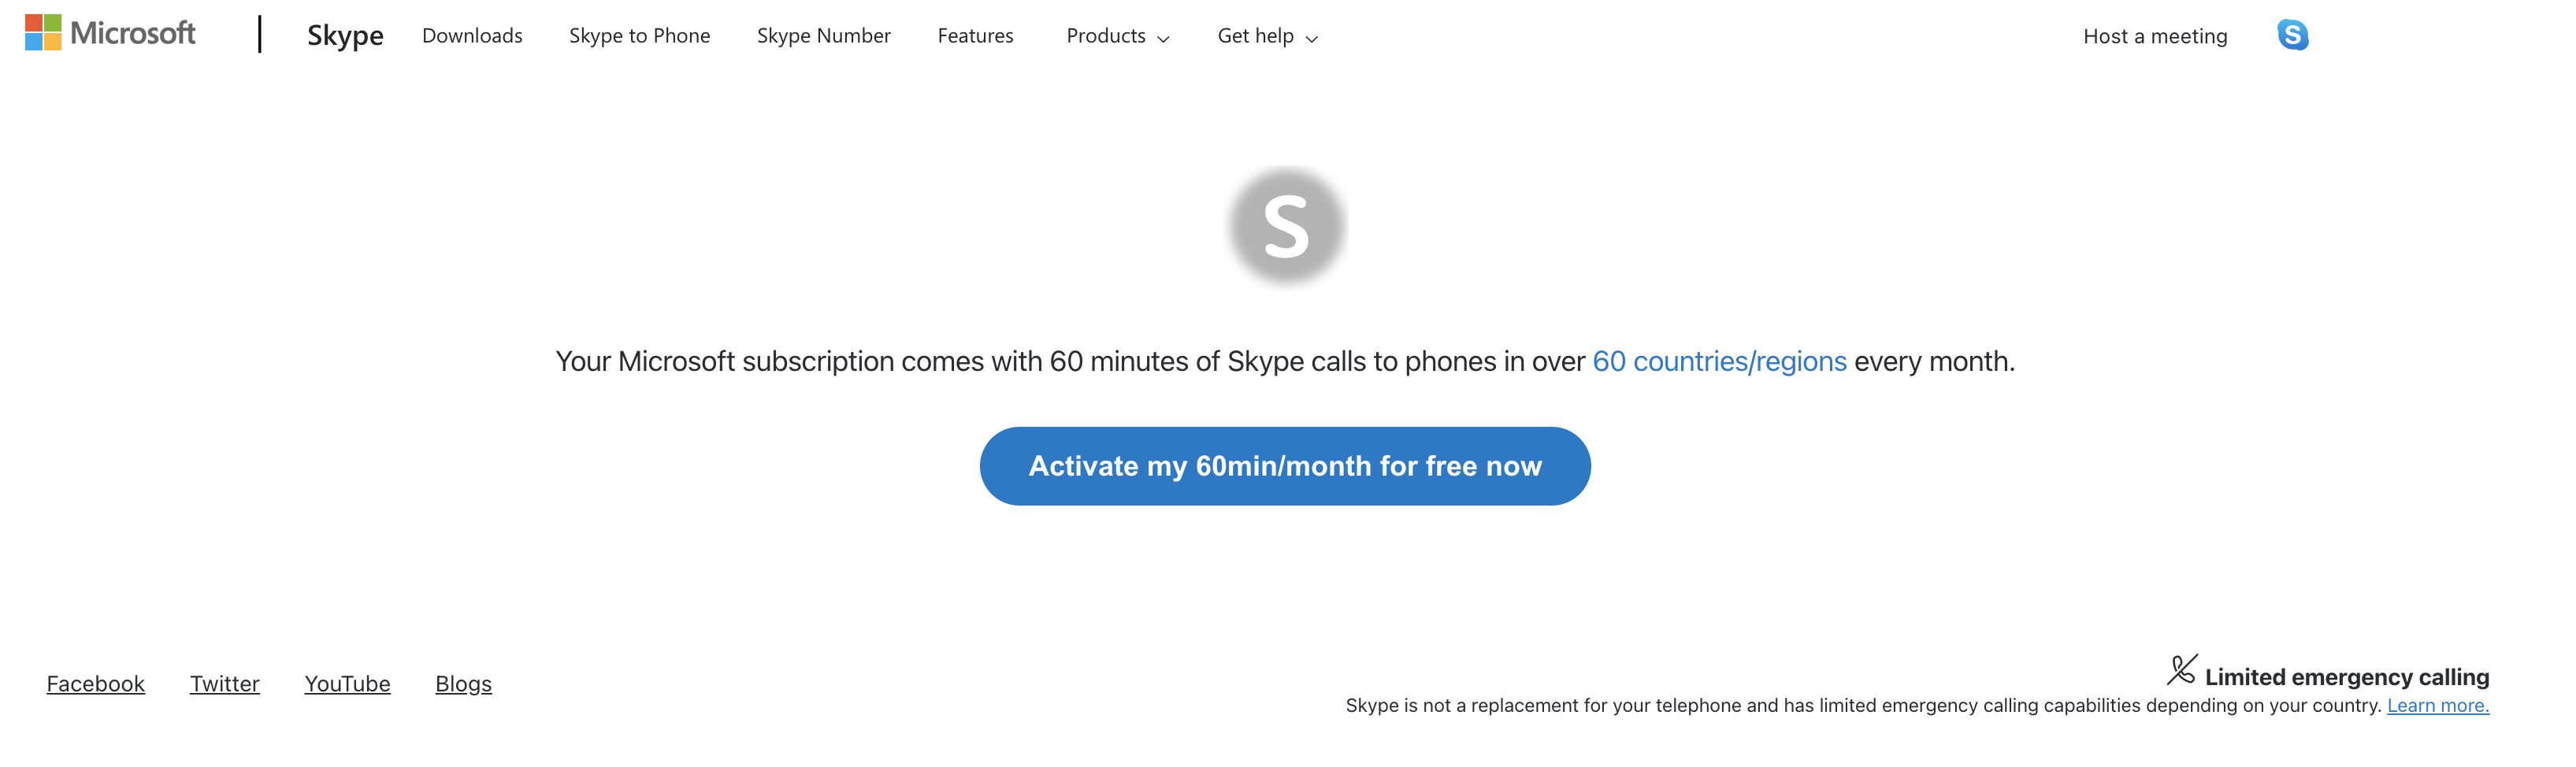 صفحة ويب لتنشيط 60 دقيقة مجانية باستخدام Skype